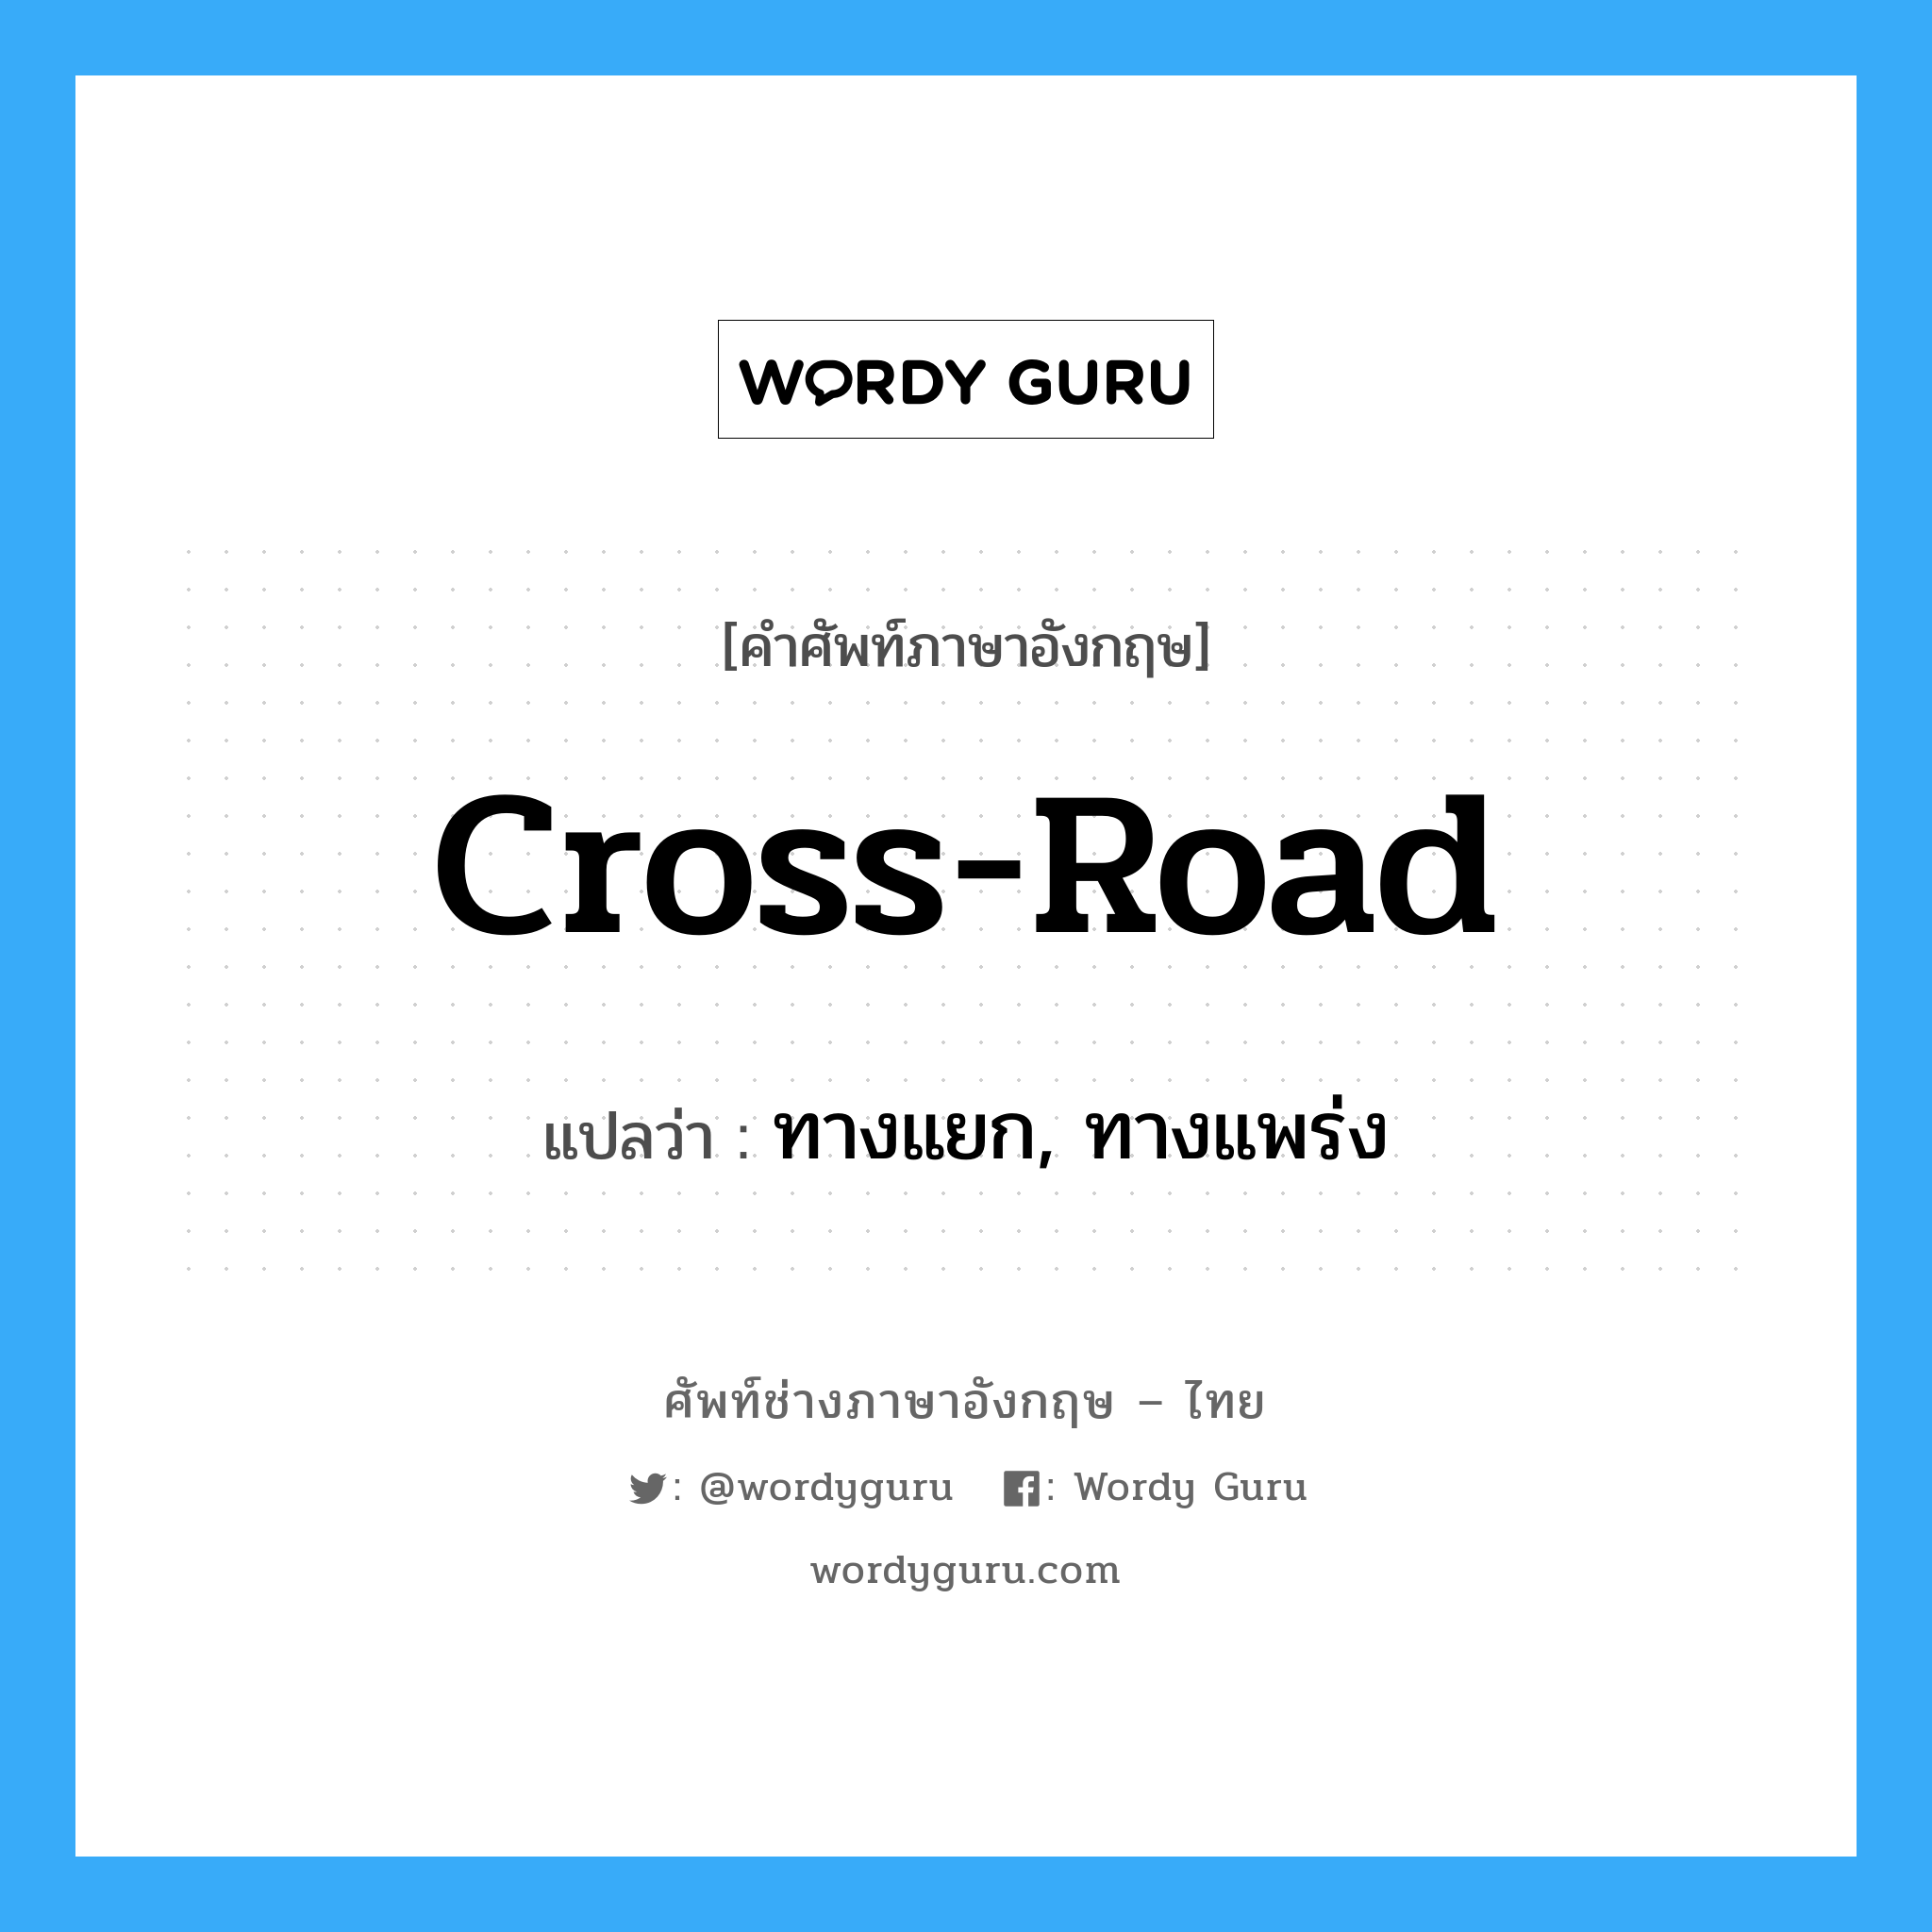 cross-road แปลว่า?, คำศัพท์ช่างภาษาอังกฤษ - ไทย cross-road คำศัพท์ภาษาอังกฤษ cross-road แปลว่า ทางแยก, ทางแพร่ง